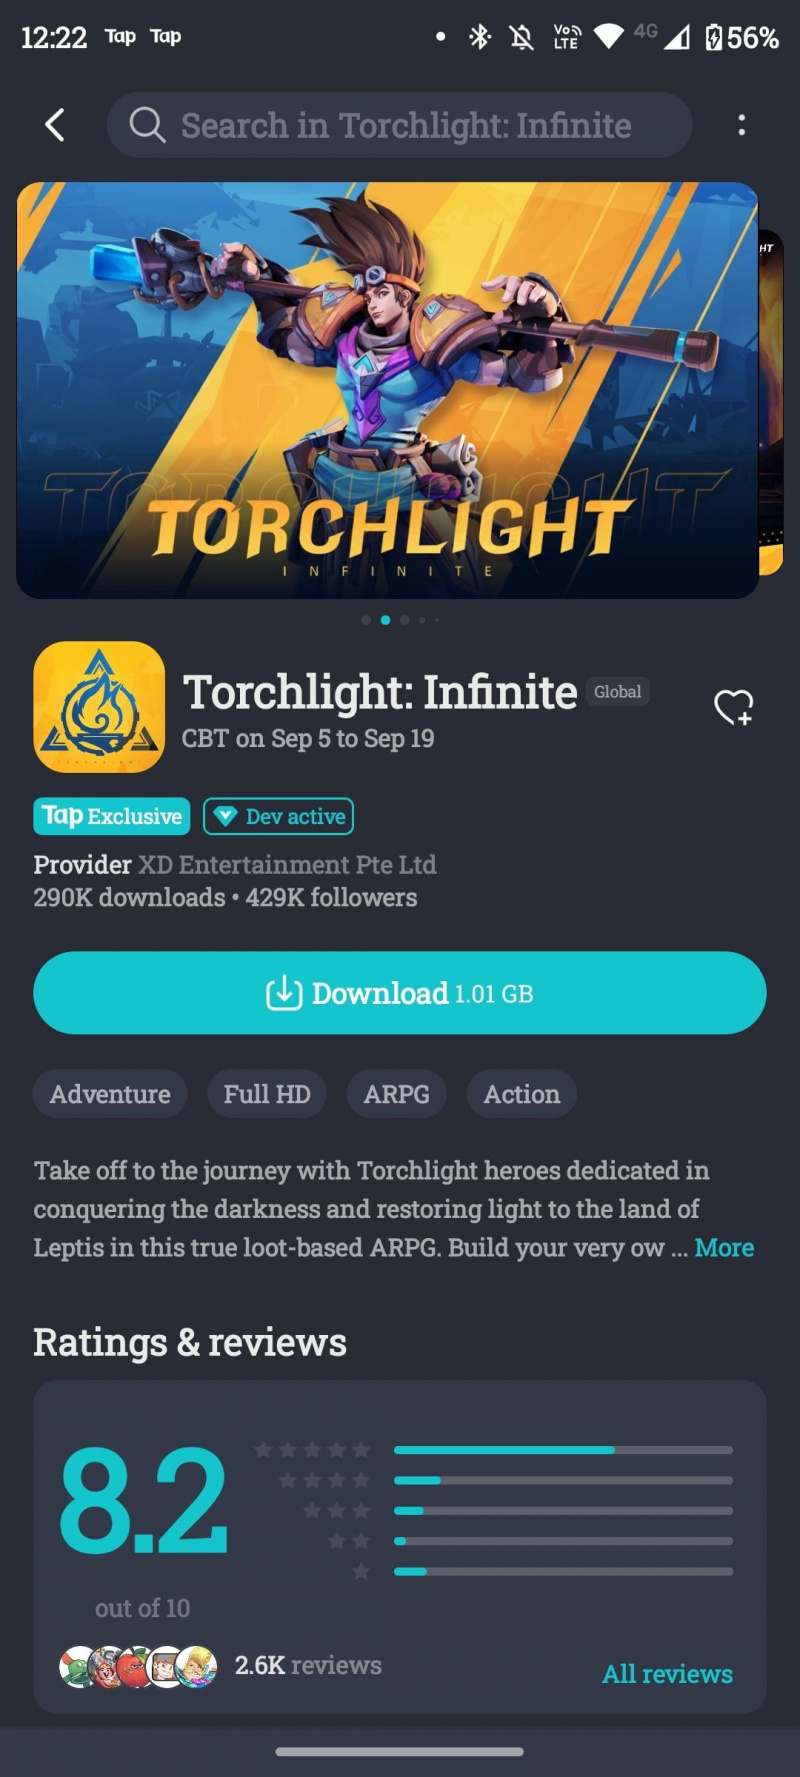   Torchlight: หน้าดาวน์โหลด TapTap ไม่มีที่สิ้นสุด